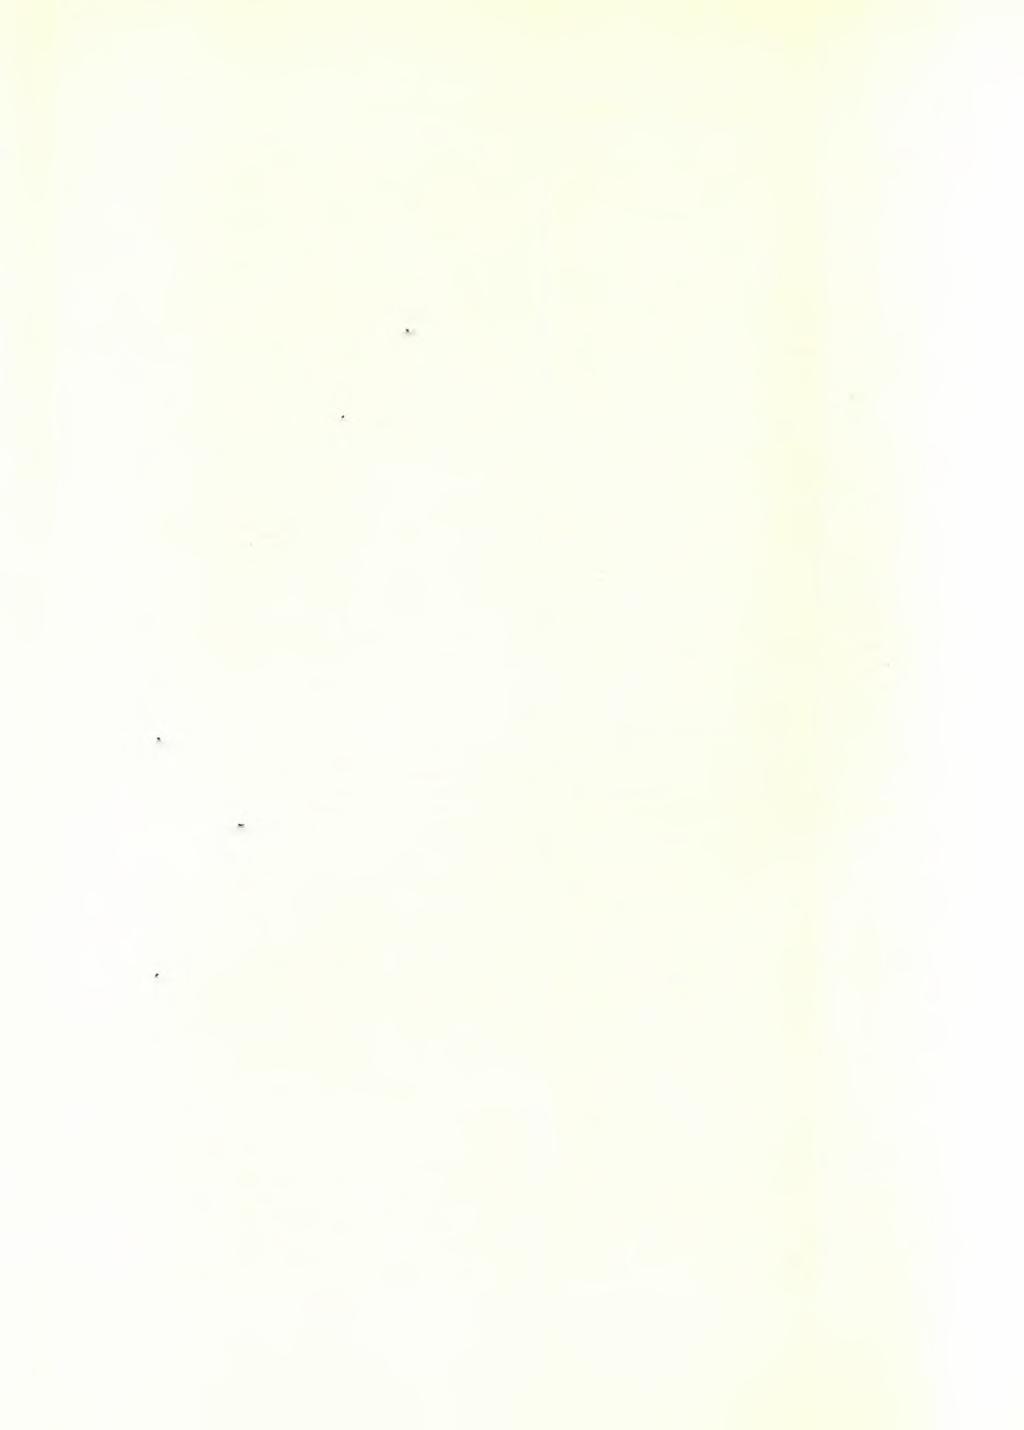 50 ΑΡΧΑΙΟΛΟΓΙΚΟΝ ΔΕΛΤΙΟΝ 17 (1961/2) : ΧΡΟΝΙΚΑ τοϋ Τελεστηρίου μεγάλος λάκκος, εις τό βάθος τοϋ όποιου φαίνονται έλάχιστα λαξεύματα τού Περικλείου τείχους, τέλος δέ ό χώρος περί τήν Νοτίαν Πύλην τού